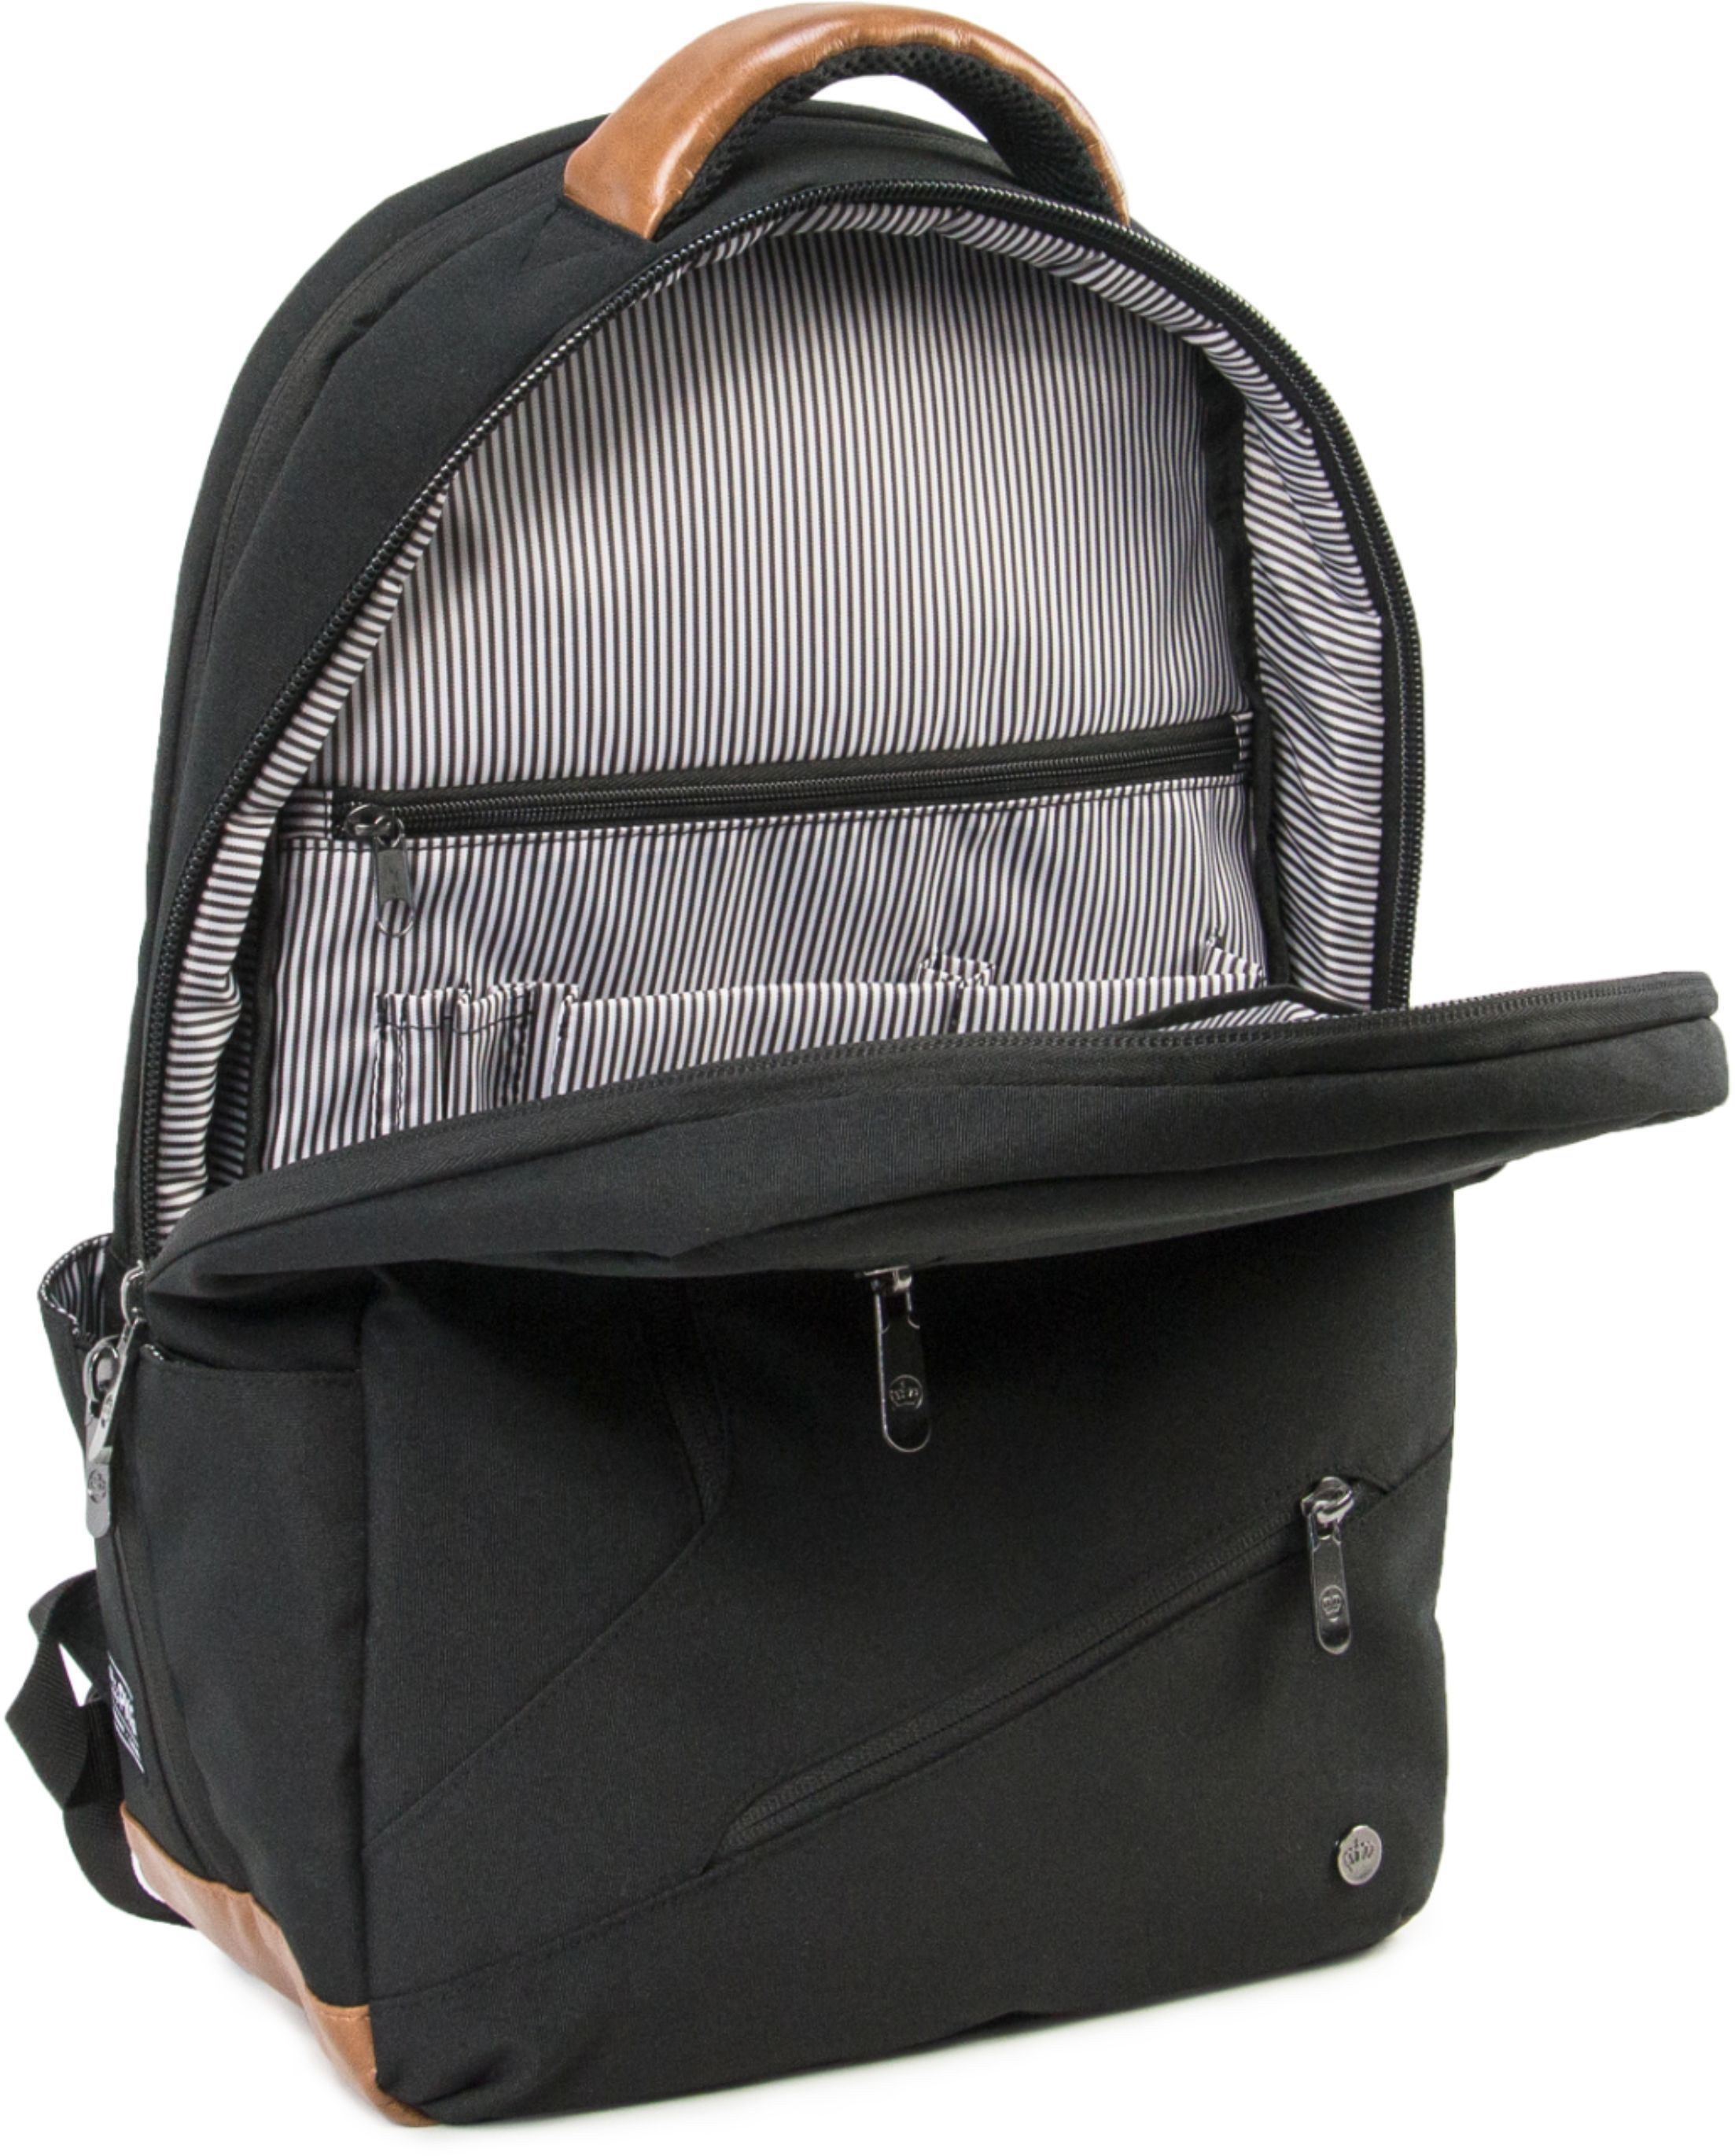 Customer Reviews: PKG Backpack for 16